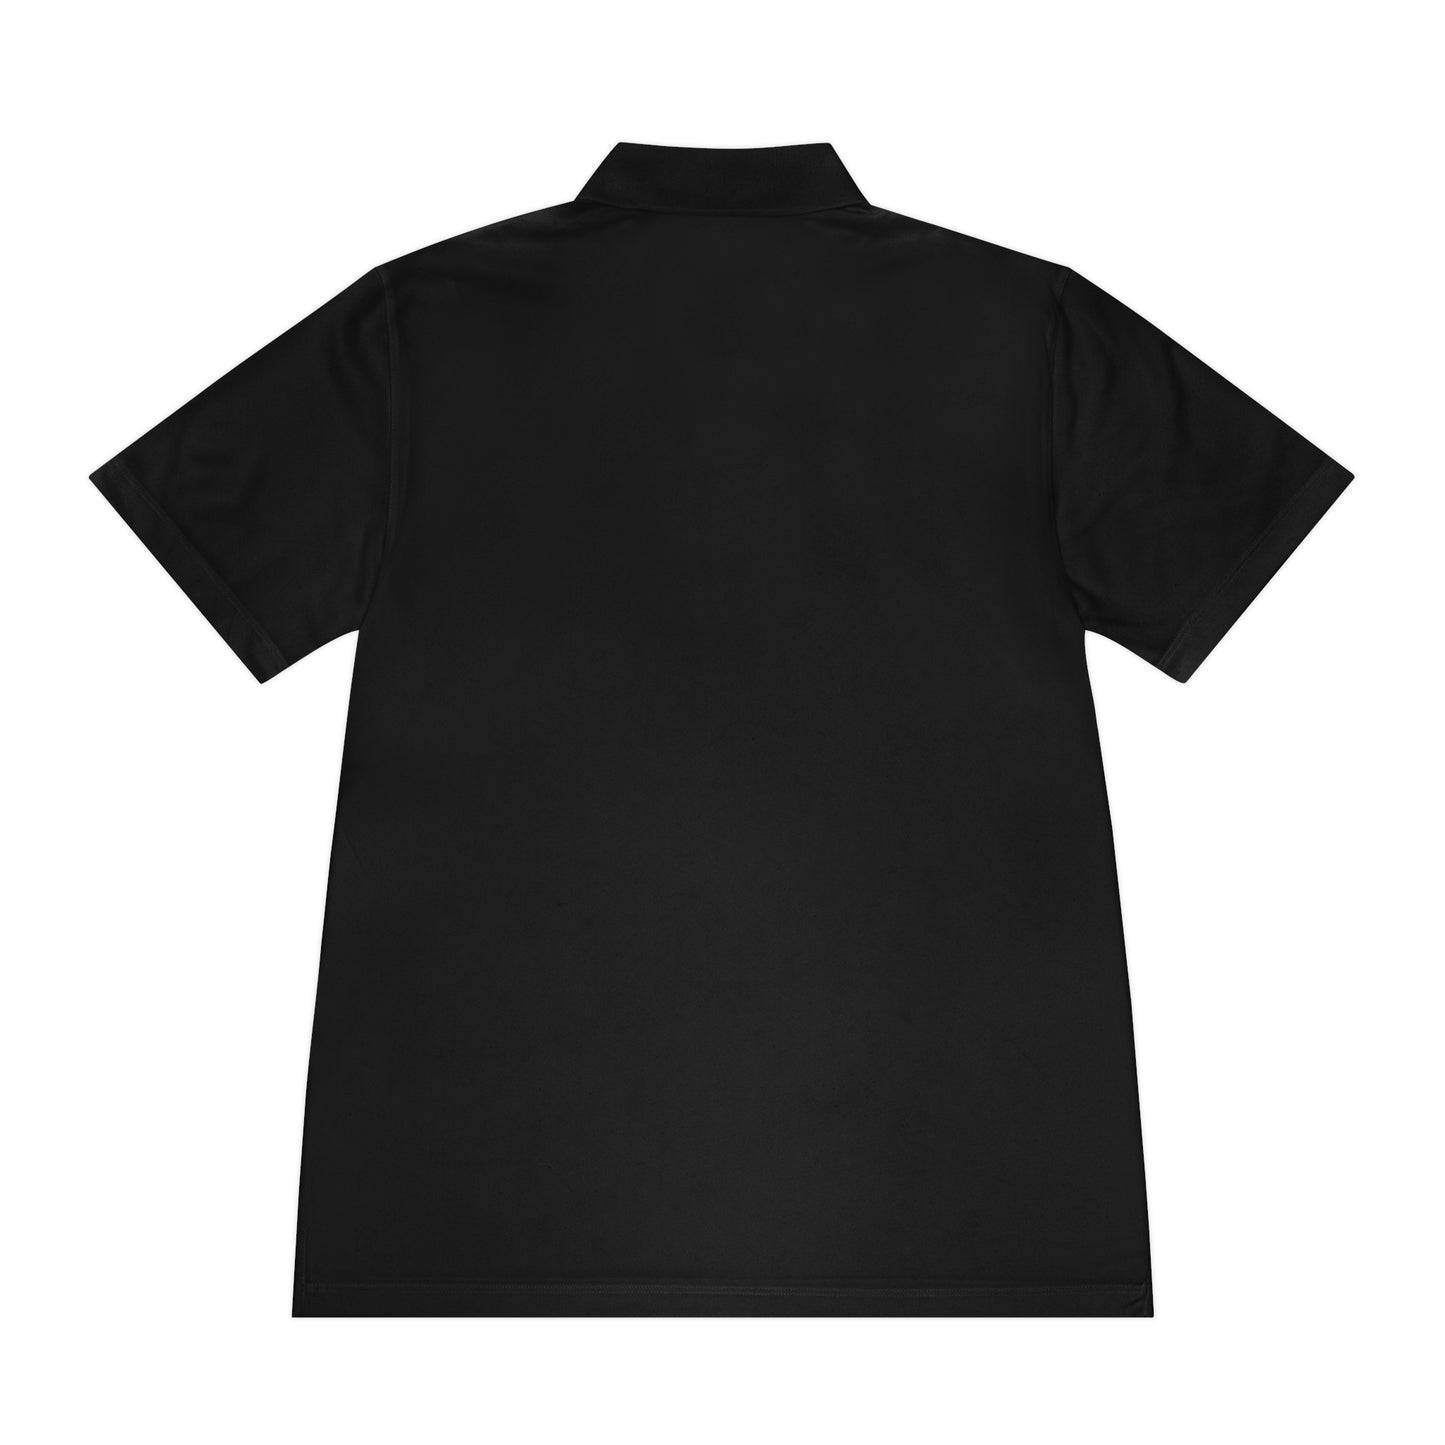 S2 - 102D SSB Polo Shirt - Back is Blank